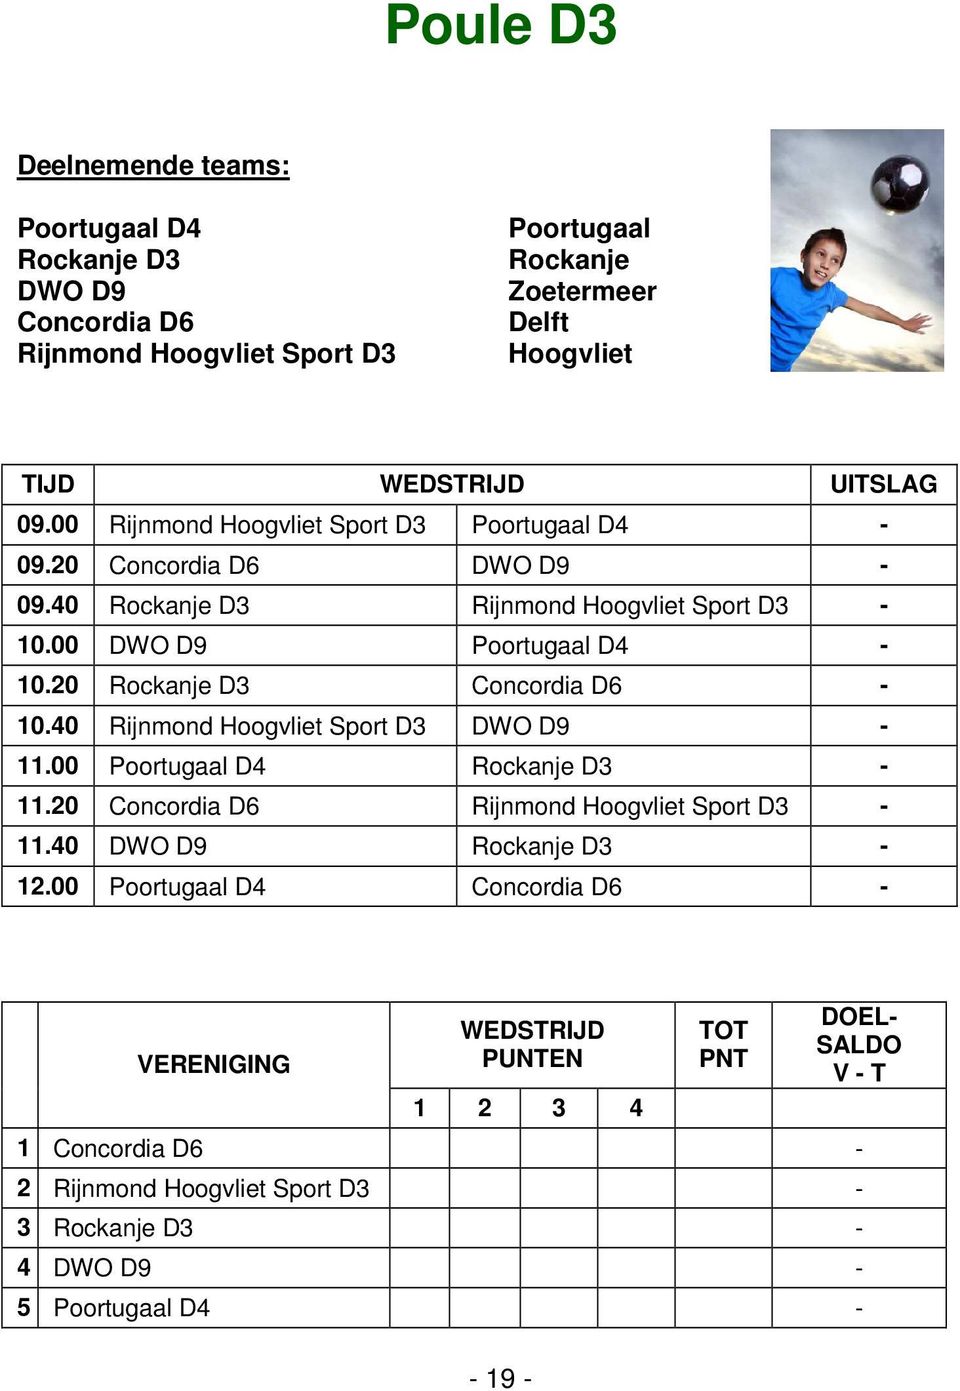 00 DWO D9 Poortugaal D4-10.20 Rockanje D3 Concordia D6-10.40 Rijnmond Sport D3 DWO D9-11.00 Poortugaal D4 Rockanje D3-11.